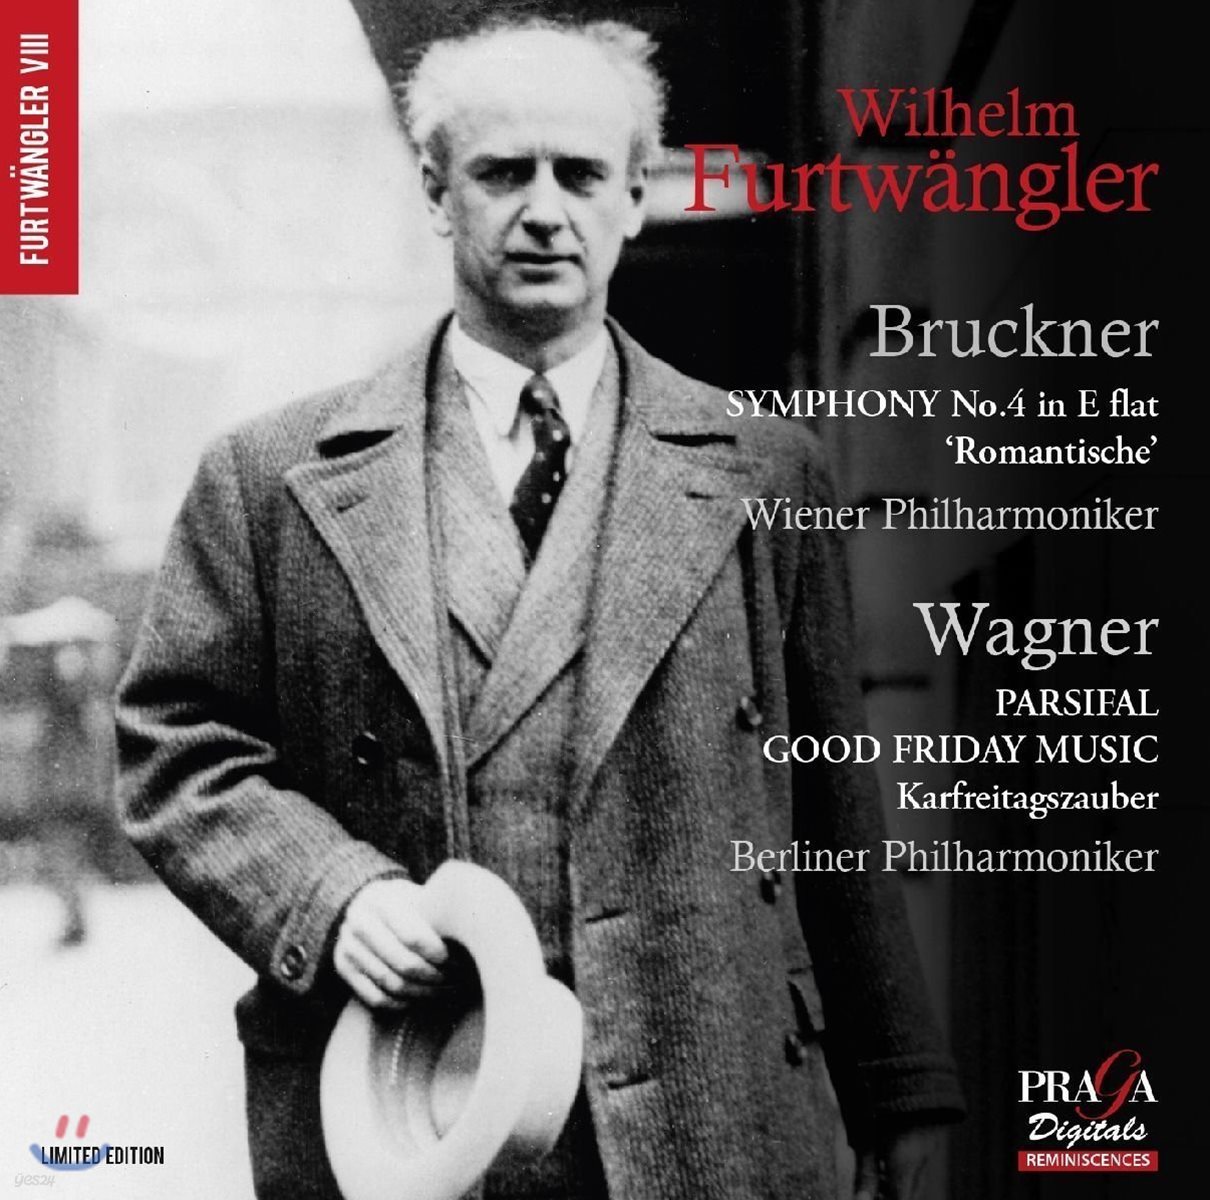 Wilhelm Furtwangler 브루크너: 교향곡 4번 &#39;낭만적&#39; / 바그너: 파르지팔 ‘성 금요일 음악’ - 빌헬름 푸르트뱅글러, 빈 필, 베를린 필 (Bruckner: Romantic Symphony / Wagner: Parsifal Good Friday Music)